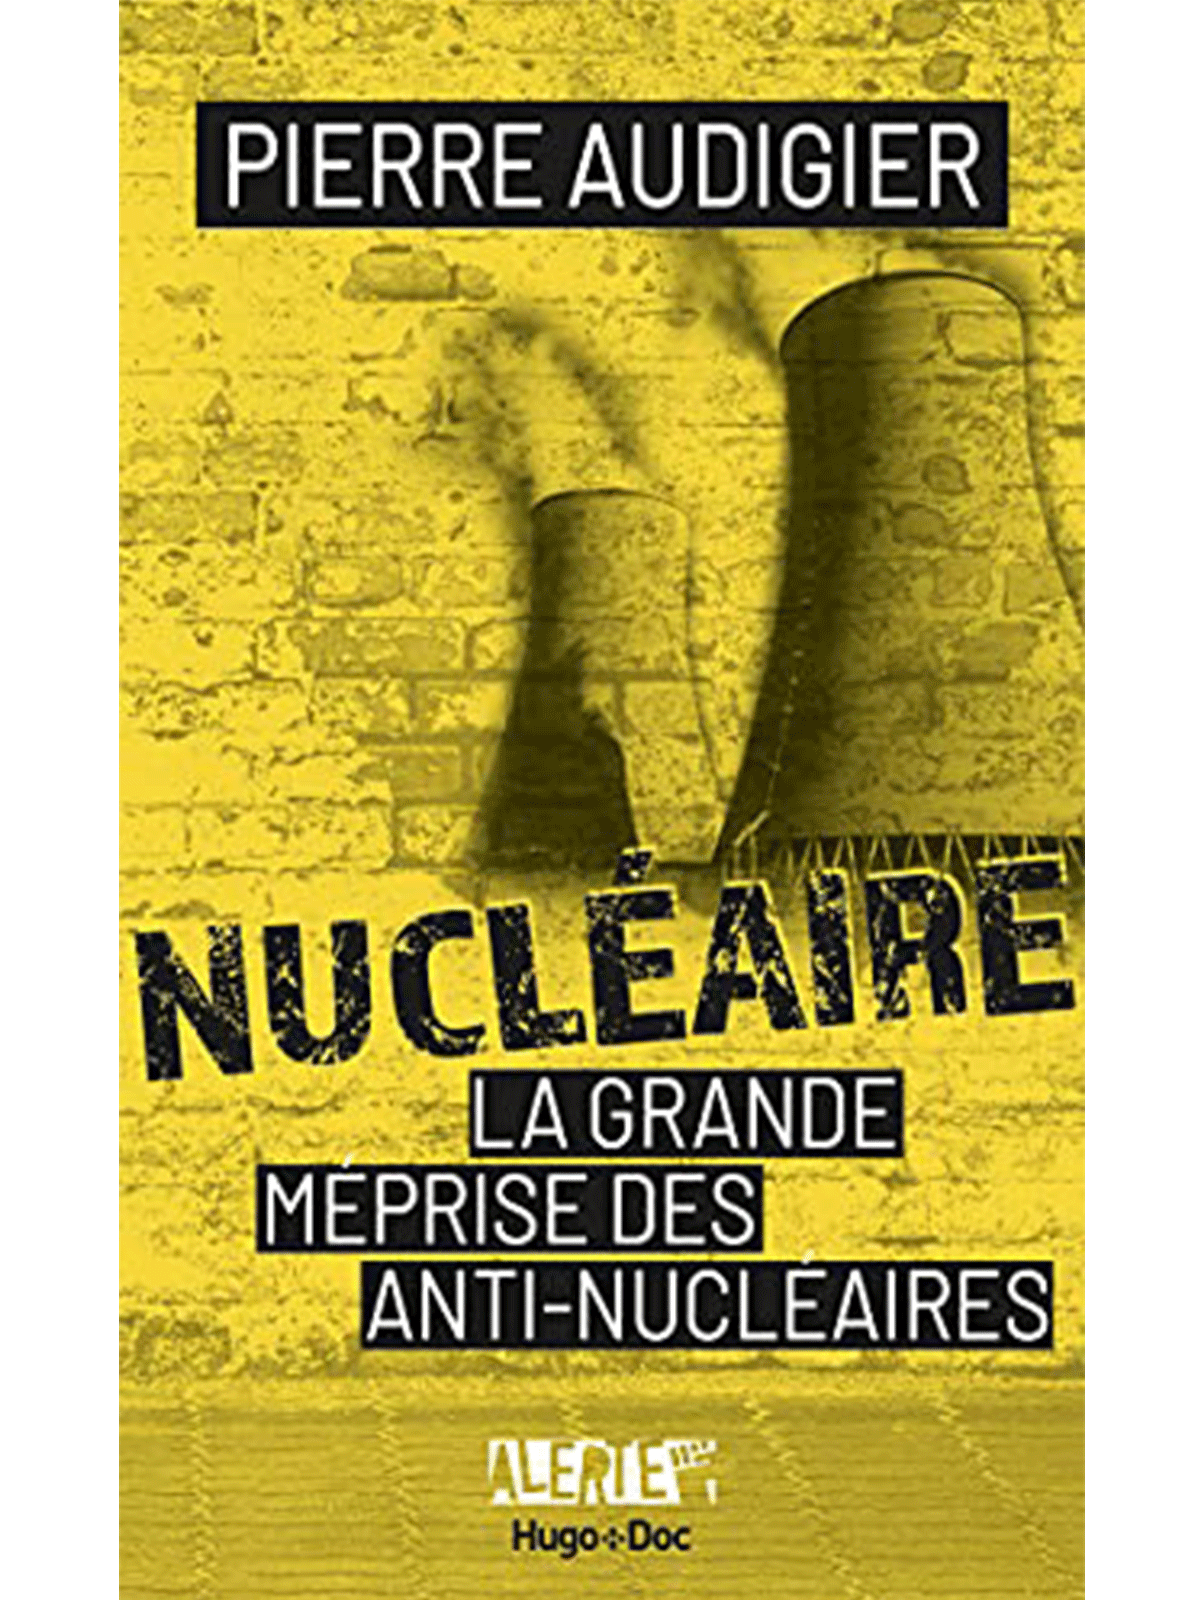 Pierre Audigier : Nucléaire, la grande méprise des antinucléaires